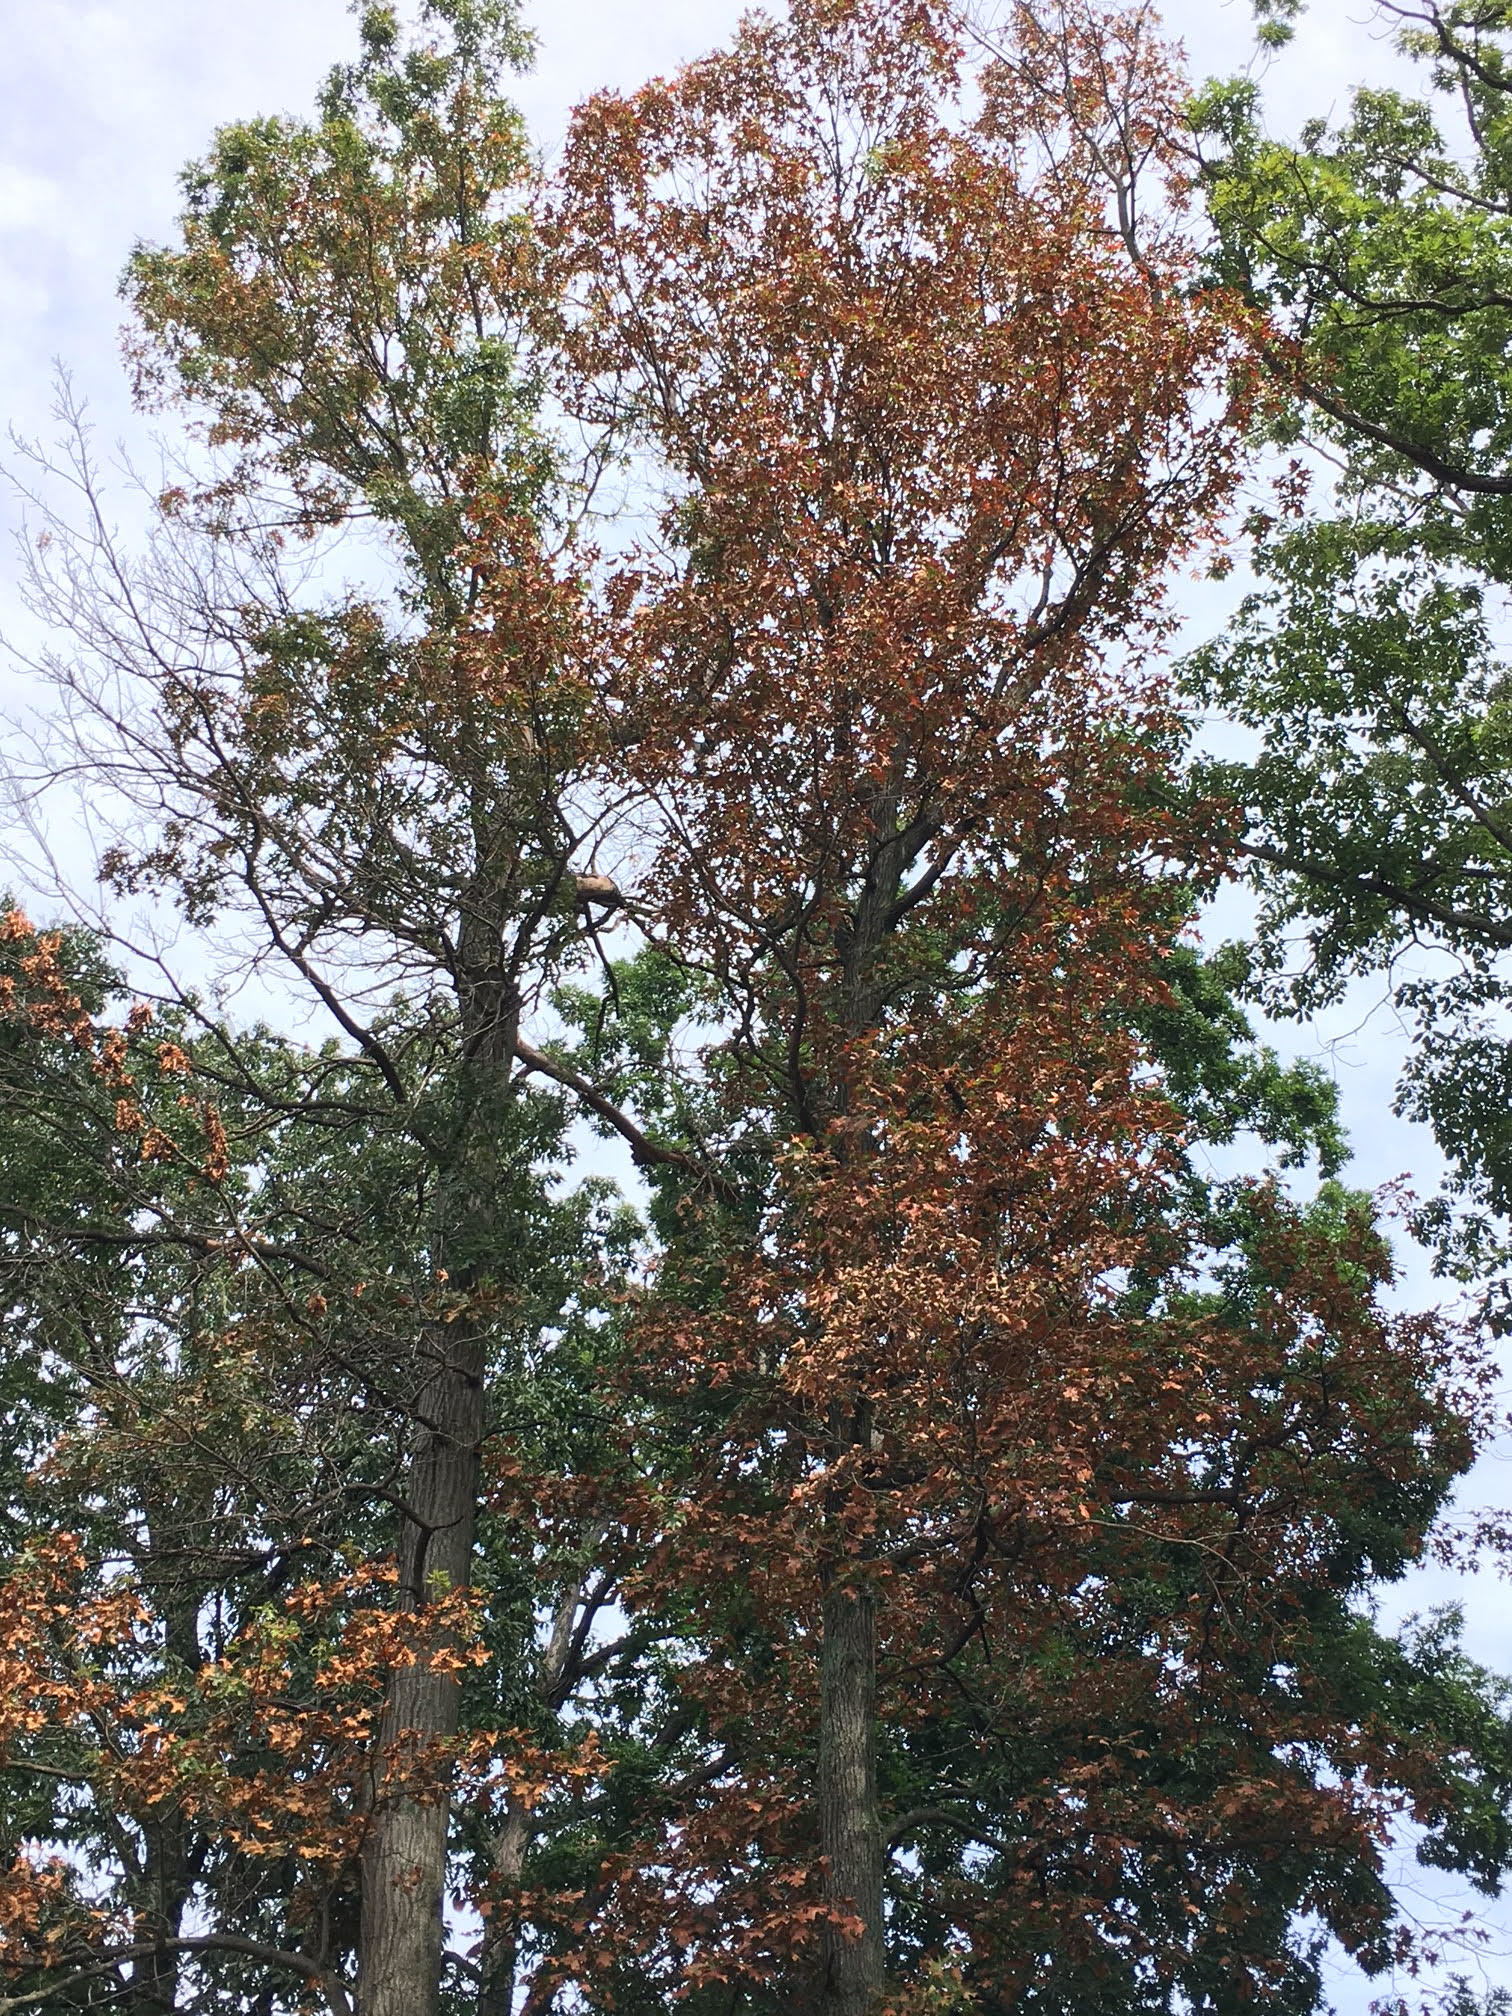 Live Oak Tree Leaves Turning Brown In Winter Nigel Antoine